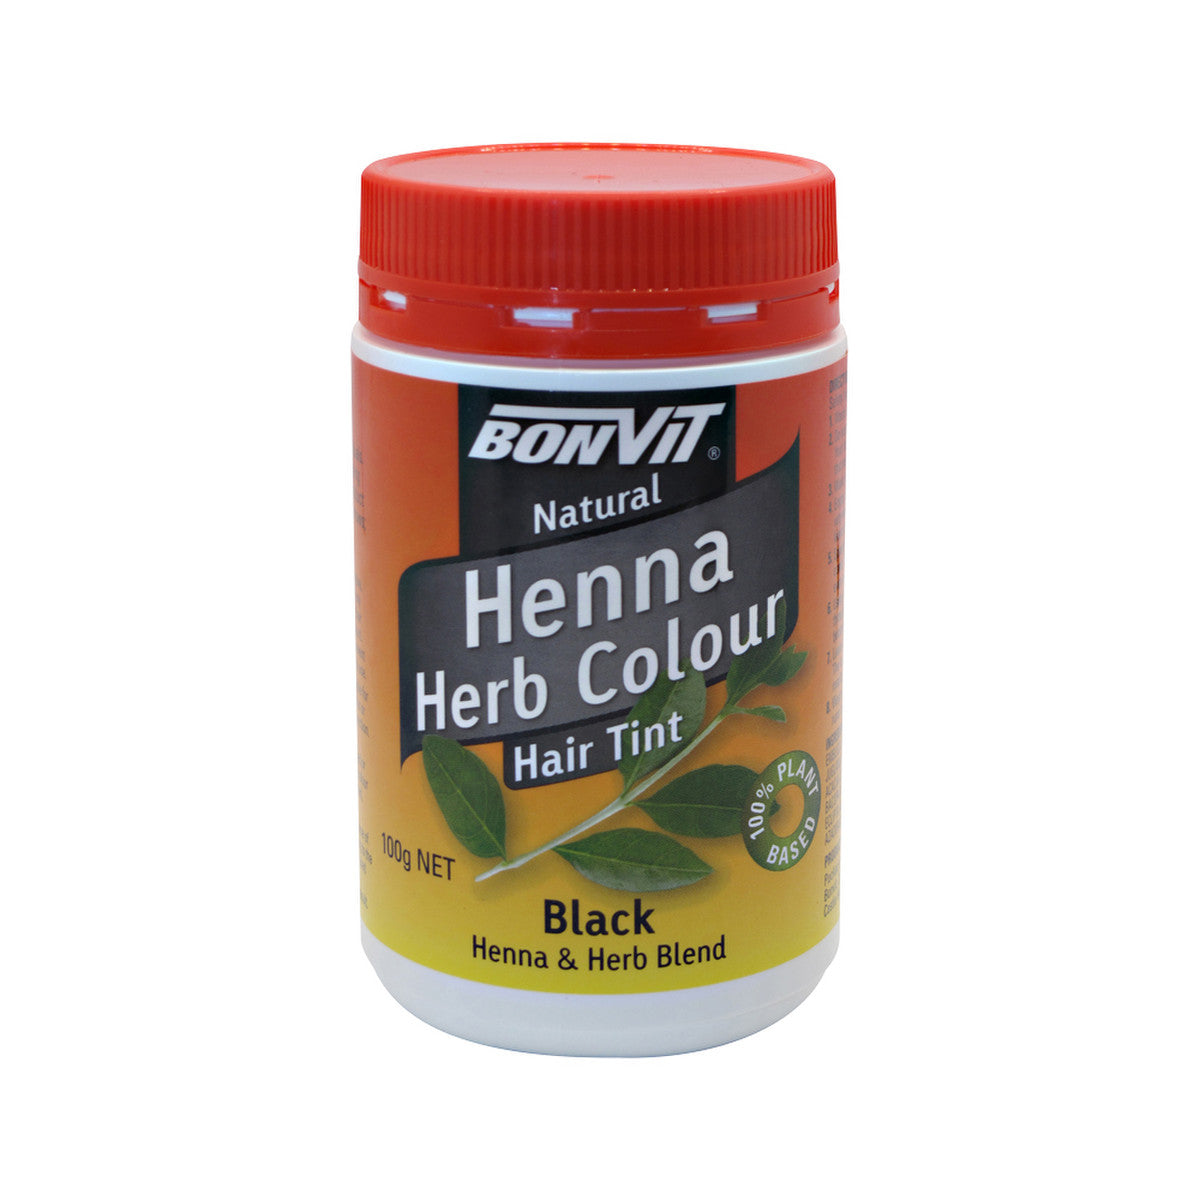 Bonvit - Henna Herb Colour Hair Tint Black